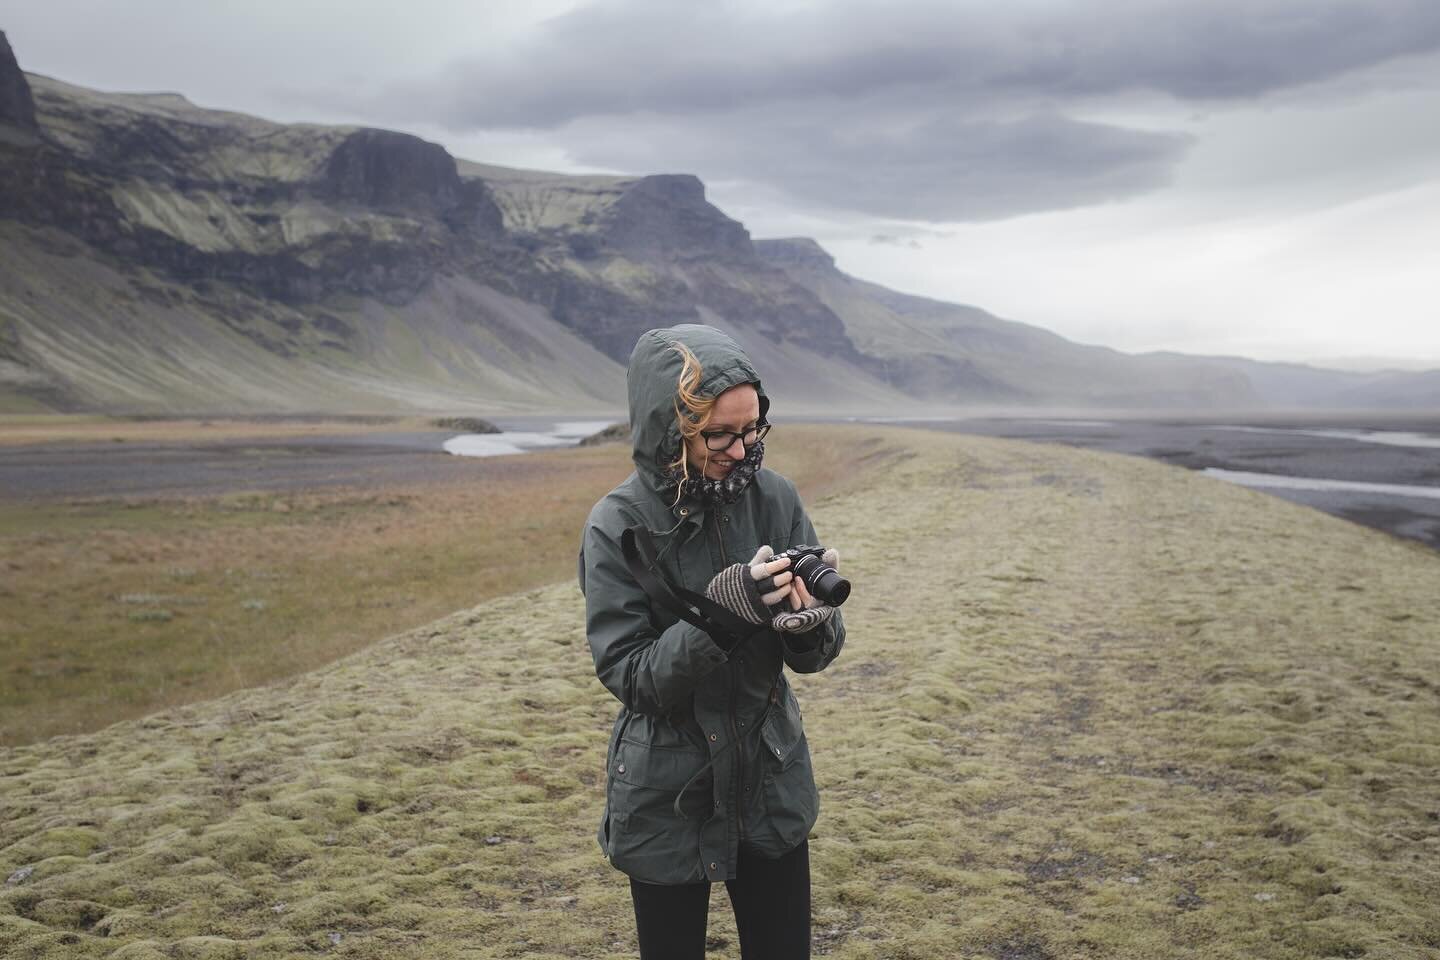 Margot in Iceland.
.
.
.
.
#icelandtravel #icelandscape #iceland🇮🇸 #visiticeland